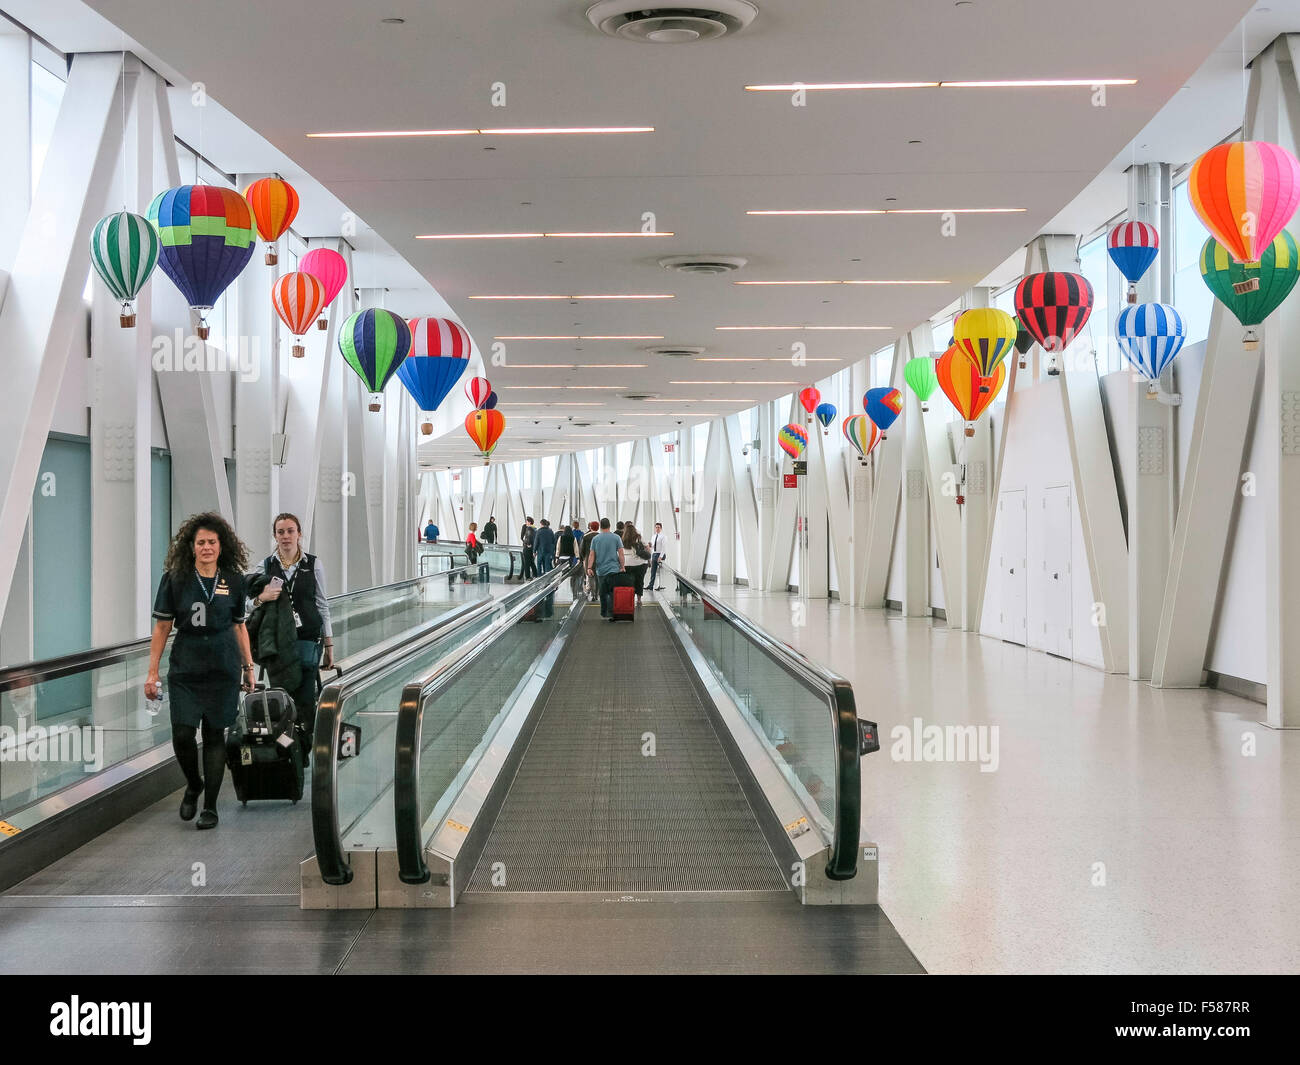 Les voyageurs de l'aéroport, trottoirs roulants à l'aéroport international John F. Kennedy, New York Banque D'Images